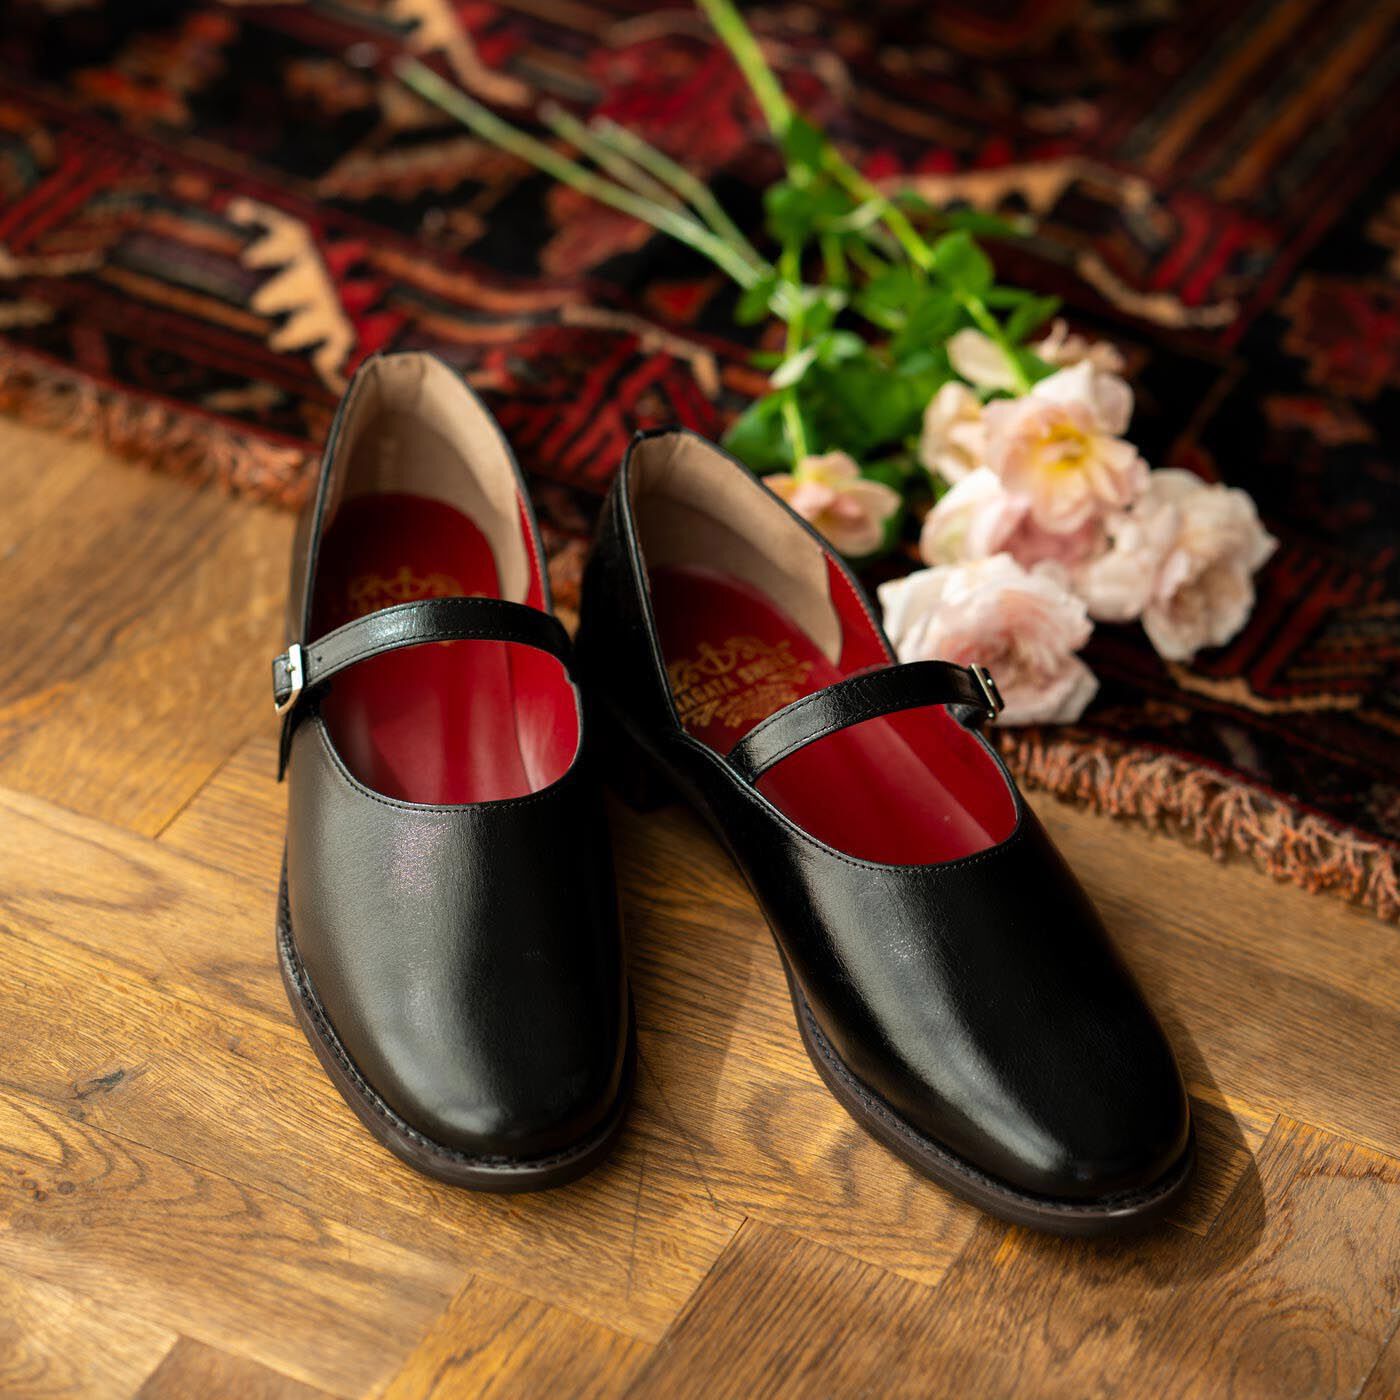 ＆Stories|靴デザイナーの理想で作った 職人本革のレジェルテシューズ〈ブラック〉|神戸・長田の靴デザイナー森下愛さんが「自分が履きたい靴」としてデザインした人気モデルをバージョンアップしました。